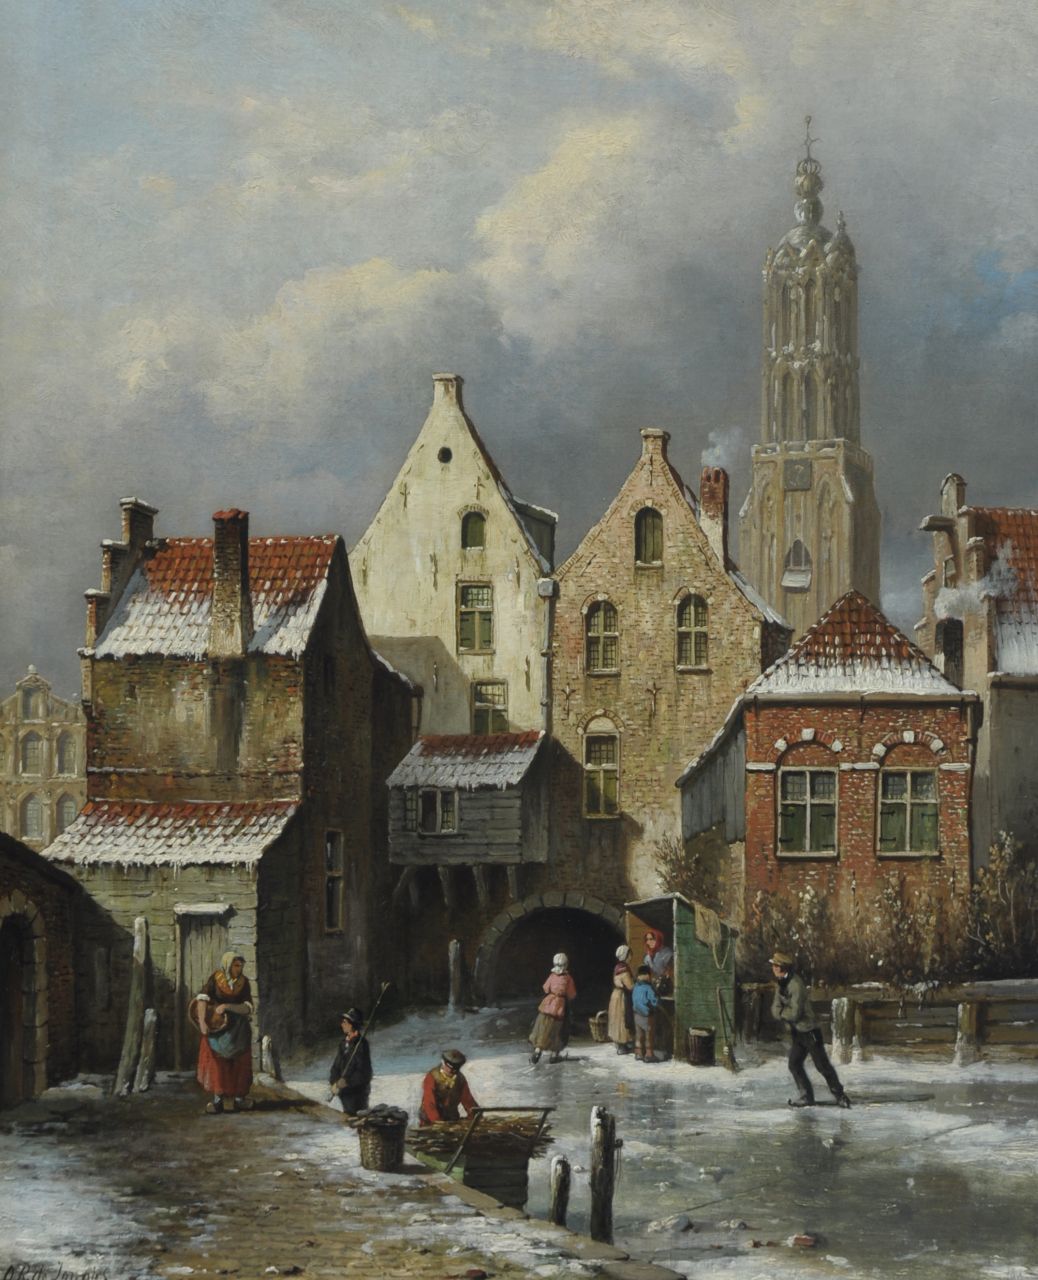 Jongh O.R. de | Oene Romkes de Jongh, Winter in Amersfoort, Öl auf Leinwand 54,1 x 44,0 cm, signed l.l.